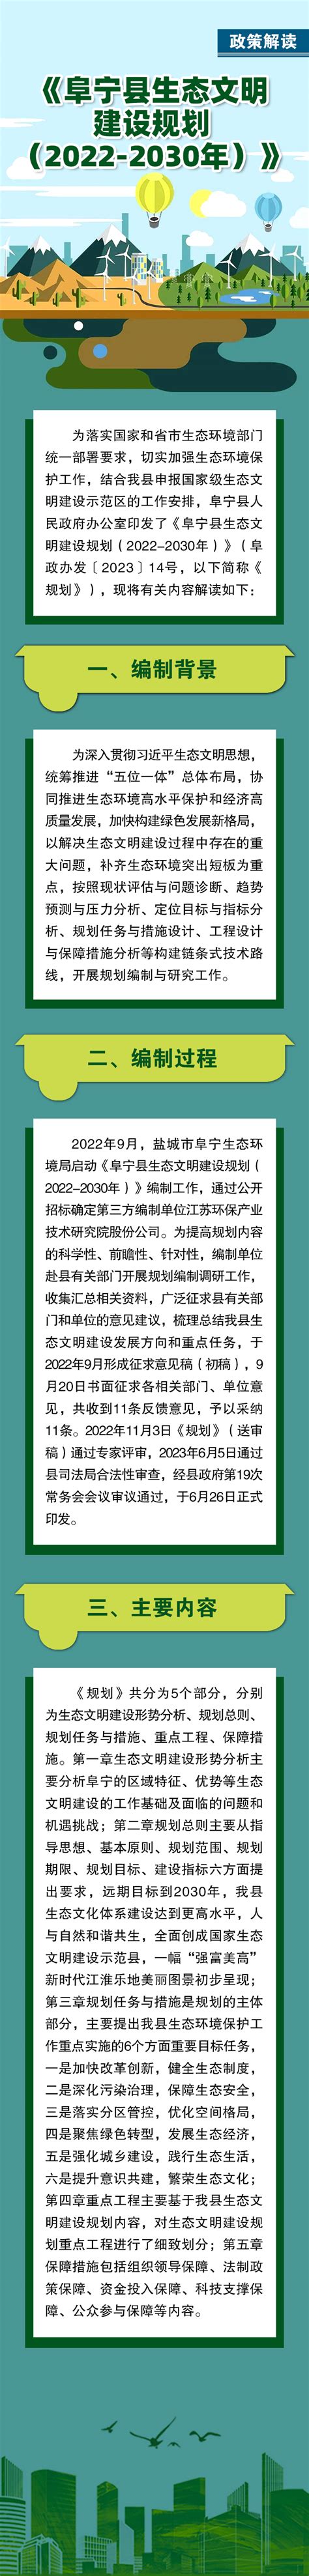 阜宁县人民政府 政策解读 《阜宁县生态文明建设规划（2022-2030年）》解读